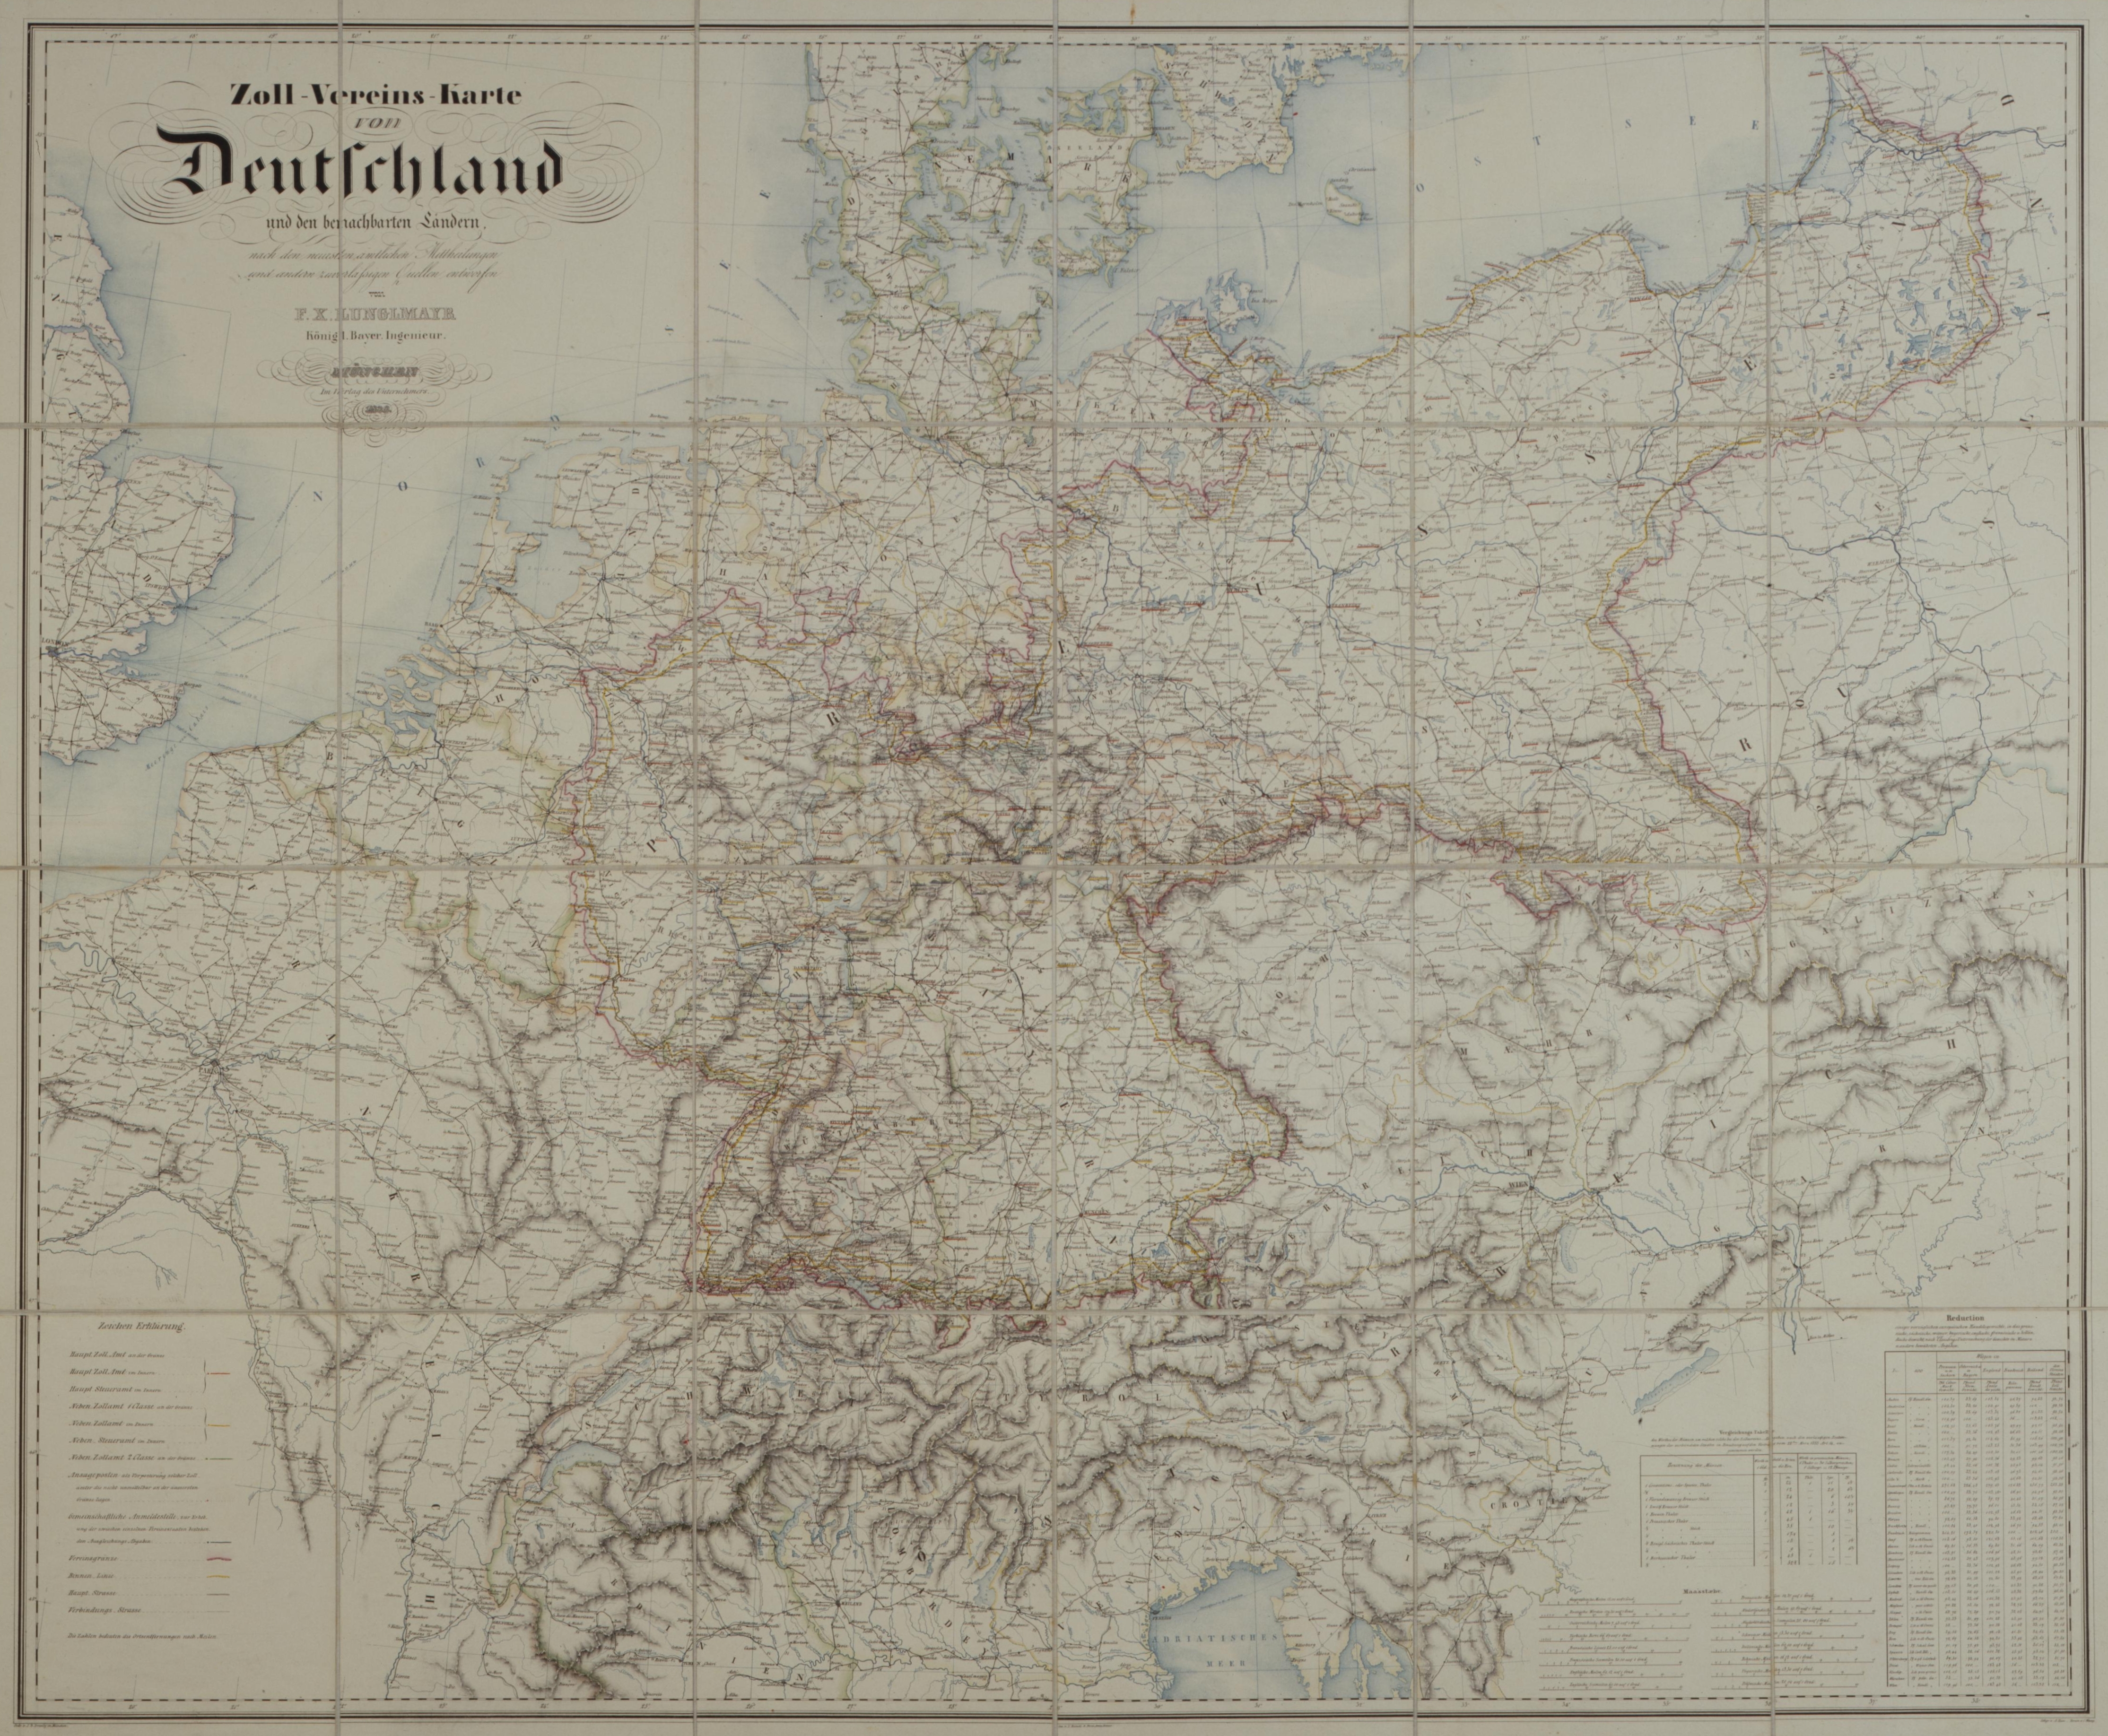 [Karte des Deutschen Zollvereins, 1836]